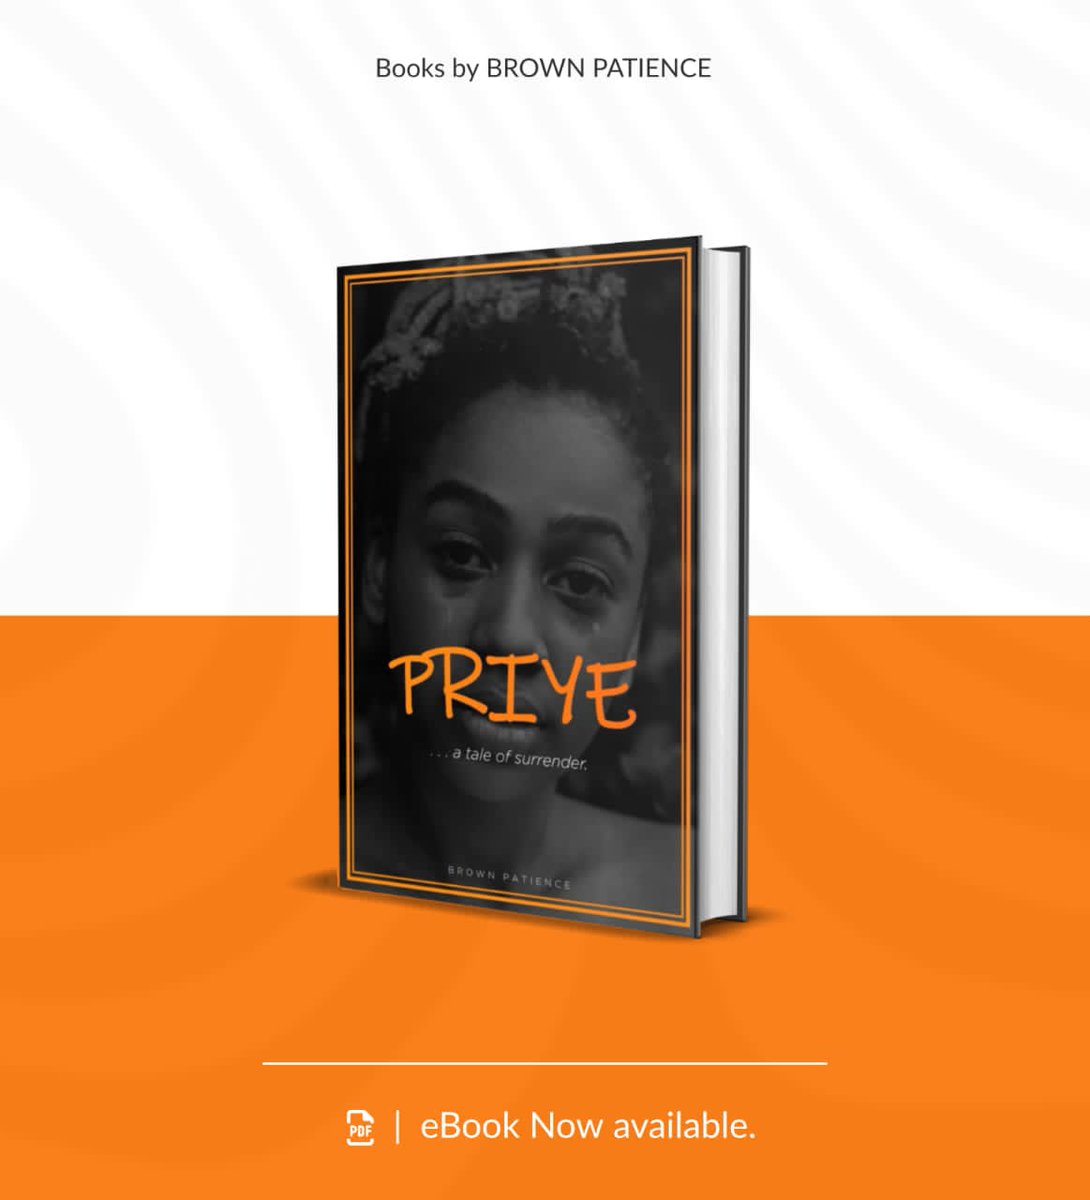 Free download. Get it here: selar.co/Priye

.
.
.
#brownpatience #booksbybrownpatience #freebook #freenovel #freeebook #africanauthor #africanauthors #nigerianauthor #nigerianauthors #storywritersinnigeria